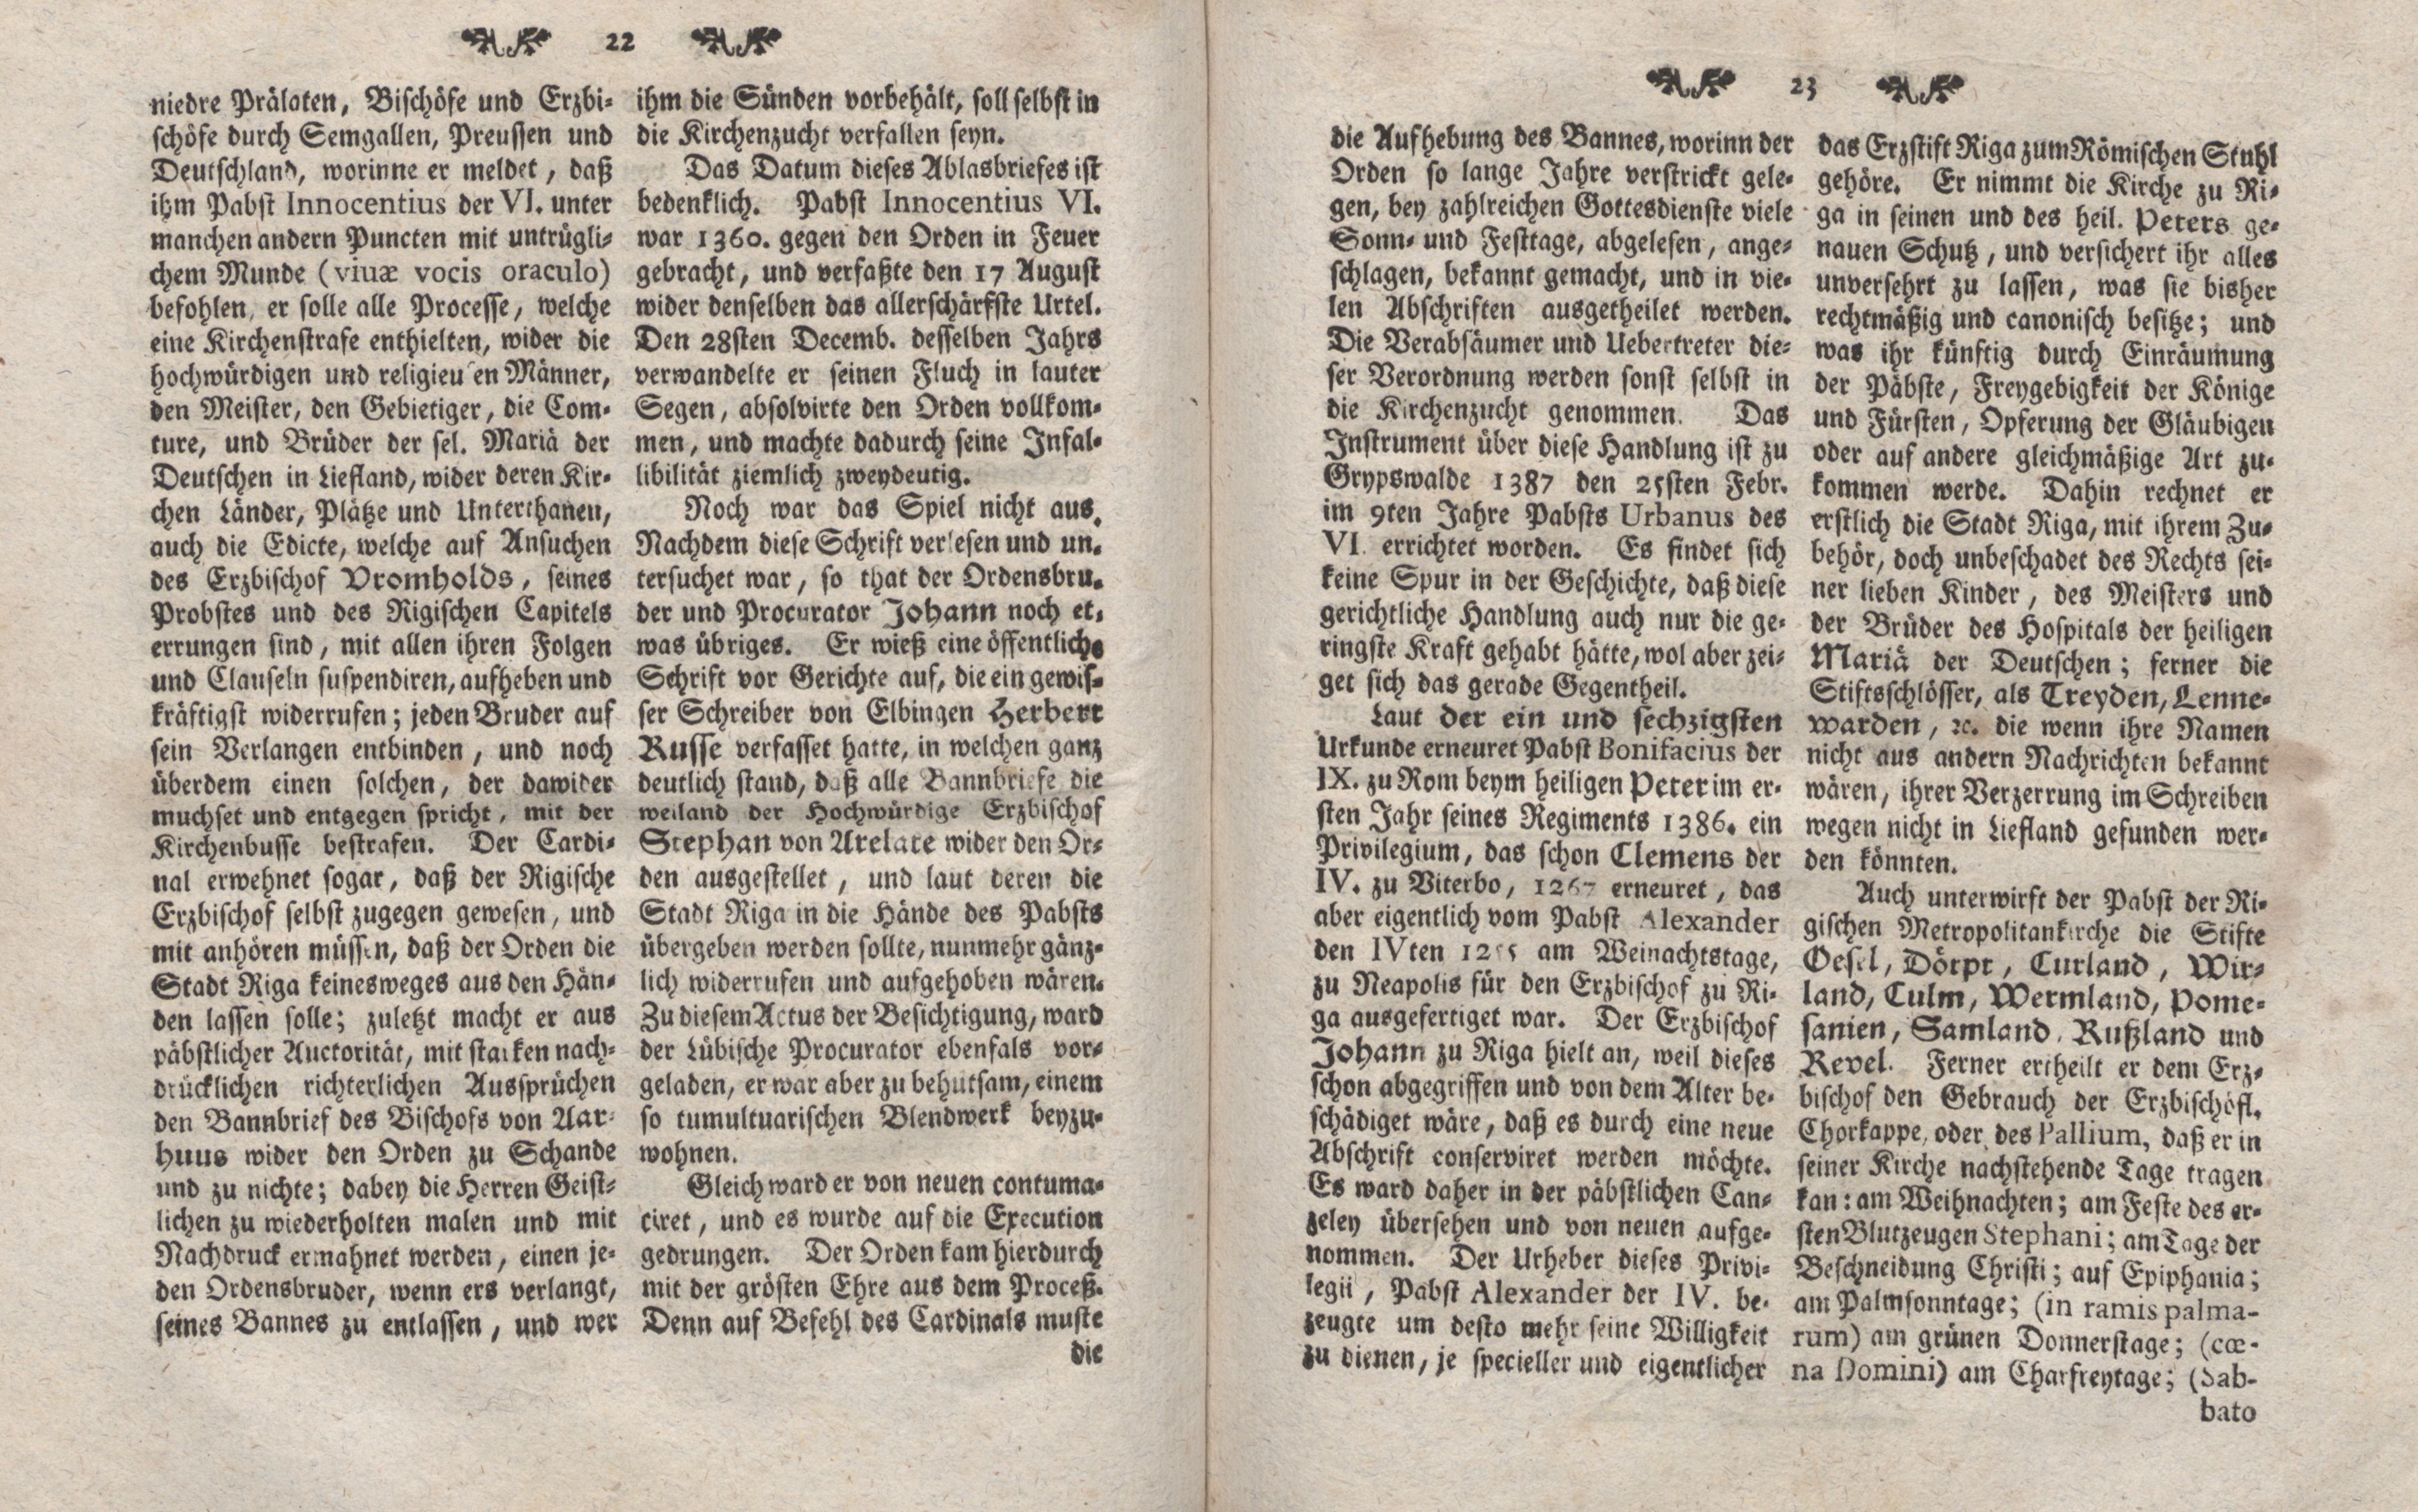 Gelehrte Beyträge zu den Rigischen Anzeigen 1764 (1764) | 12. (22-23) Main body of text